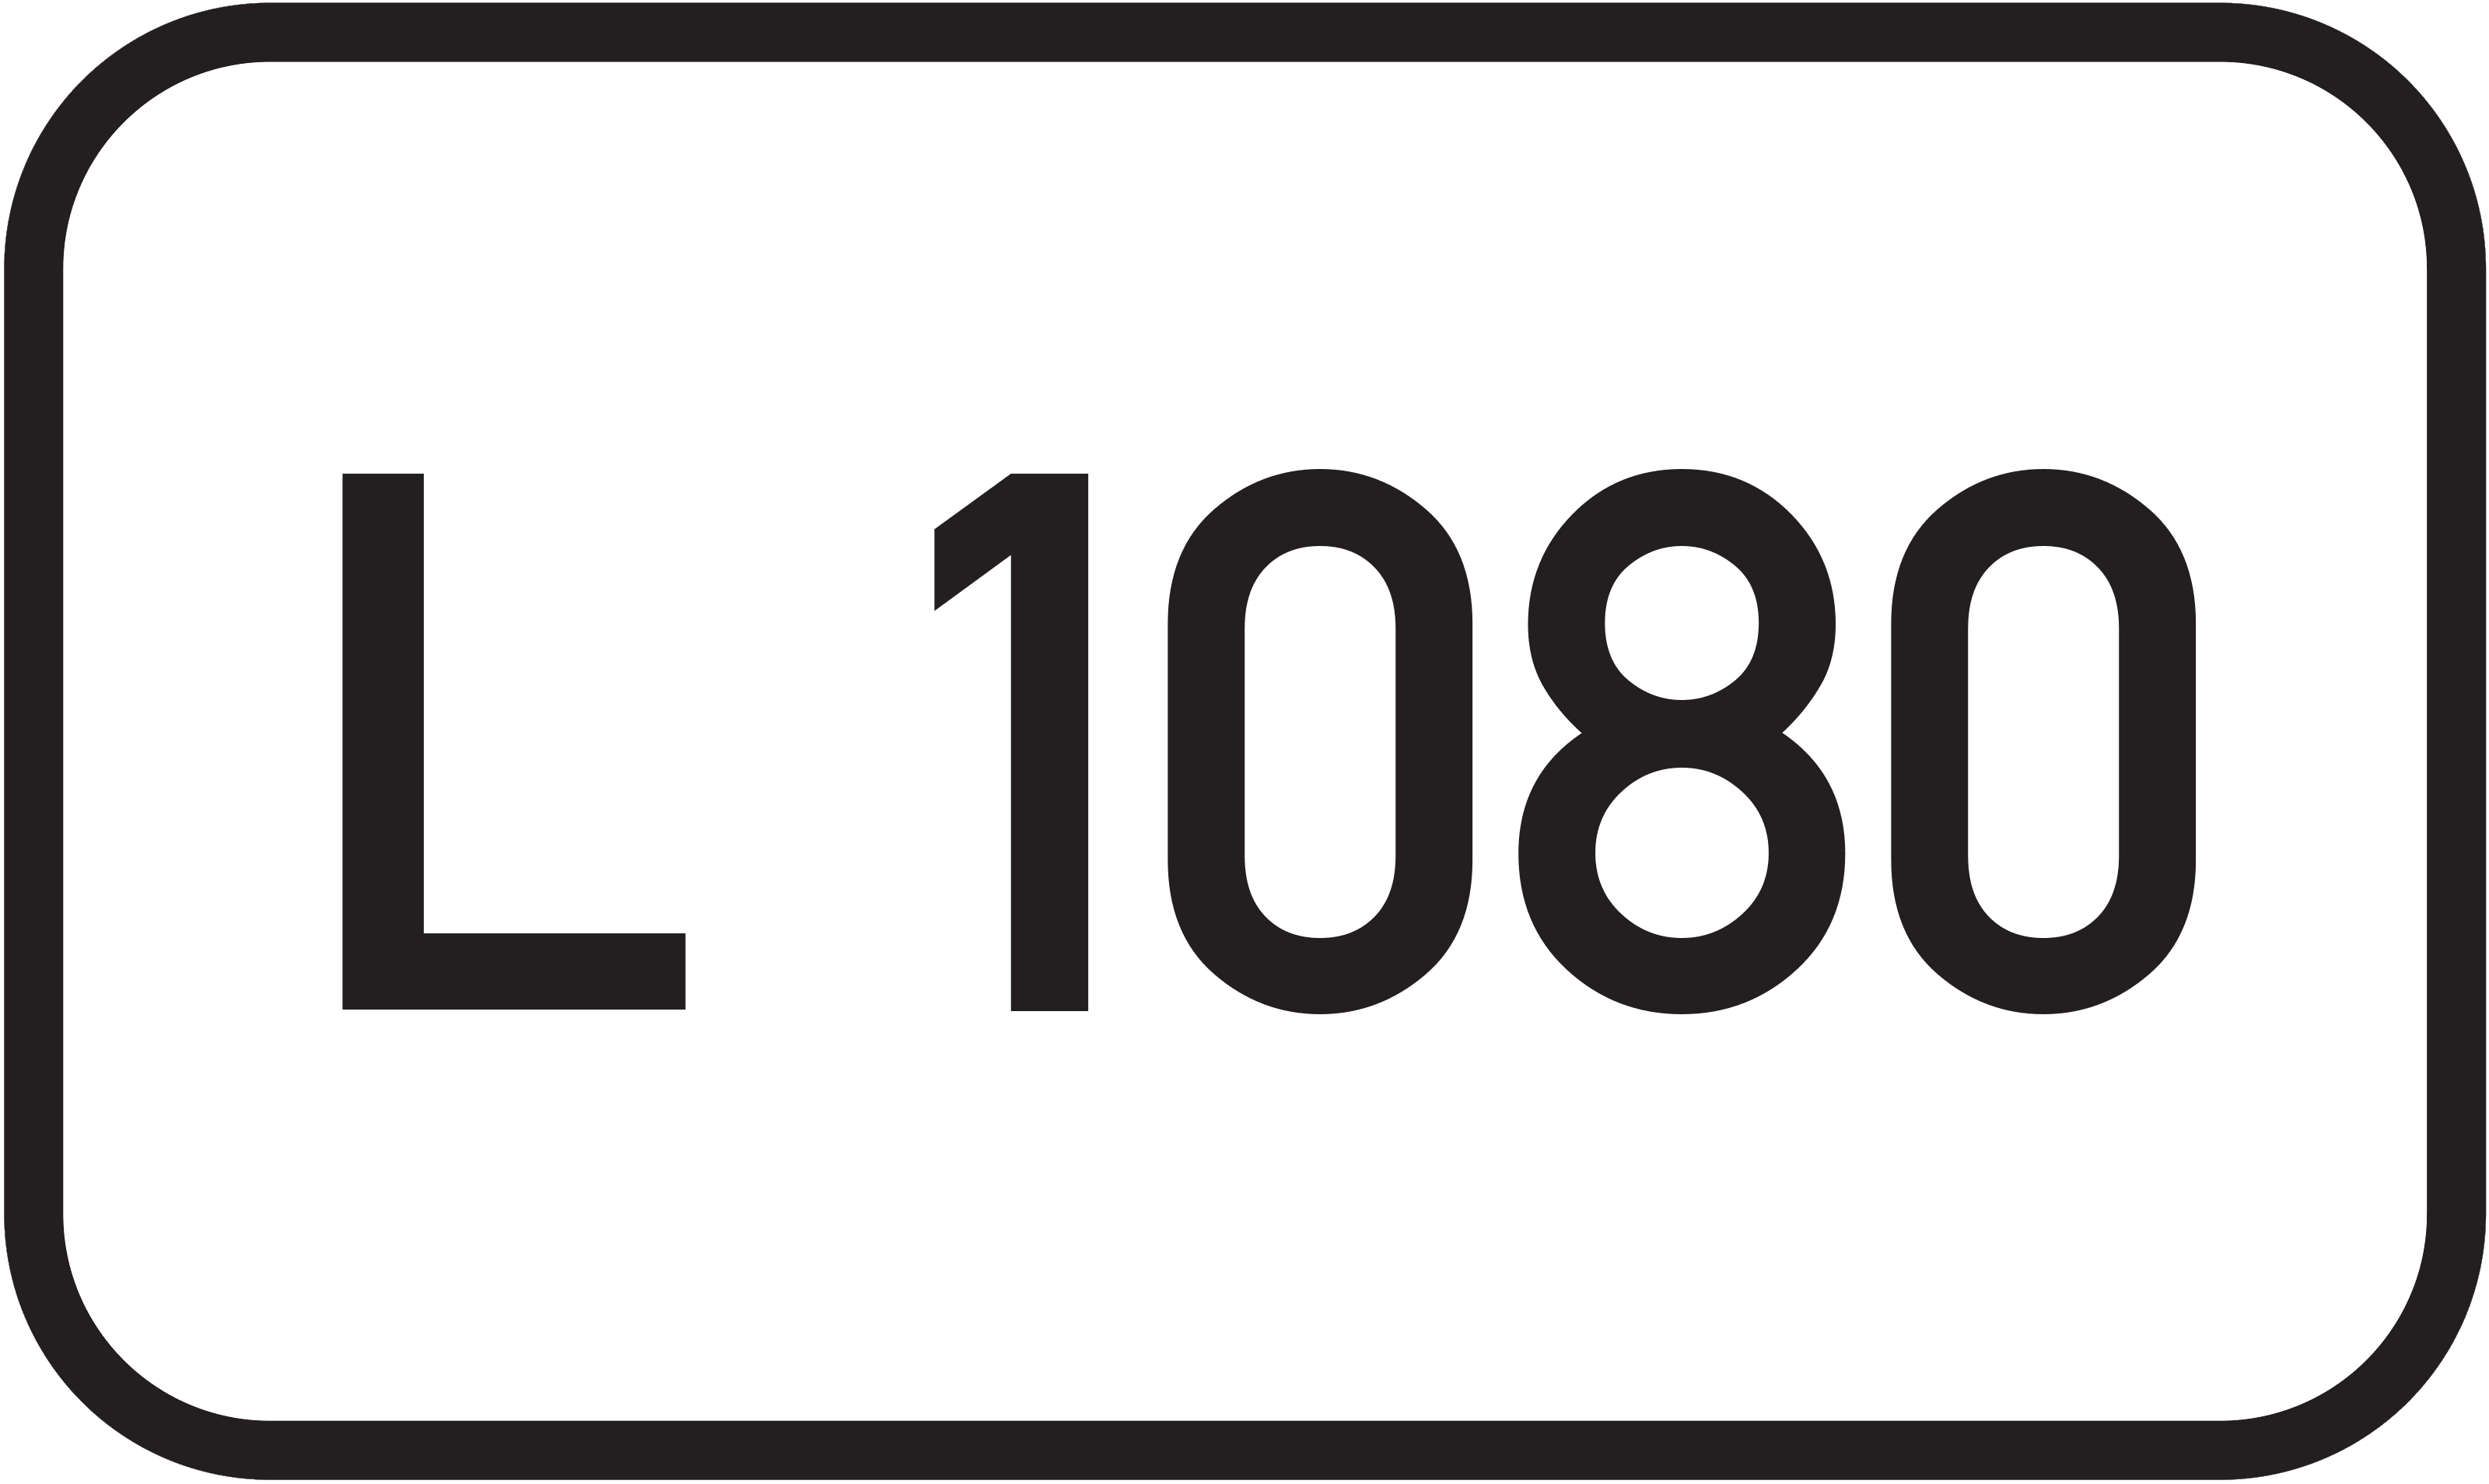 Landesstraße L 1080